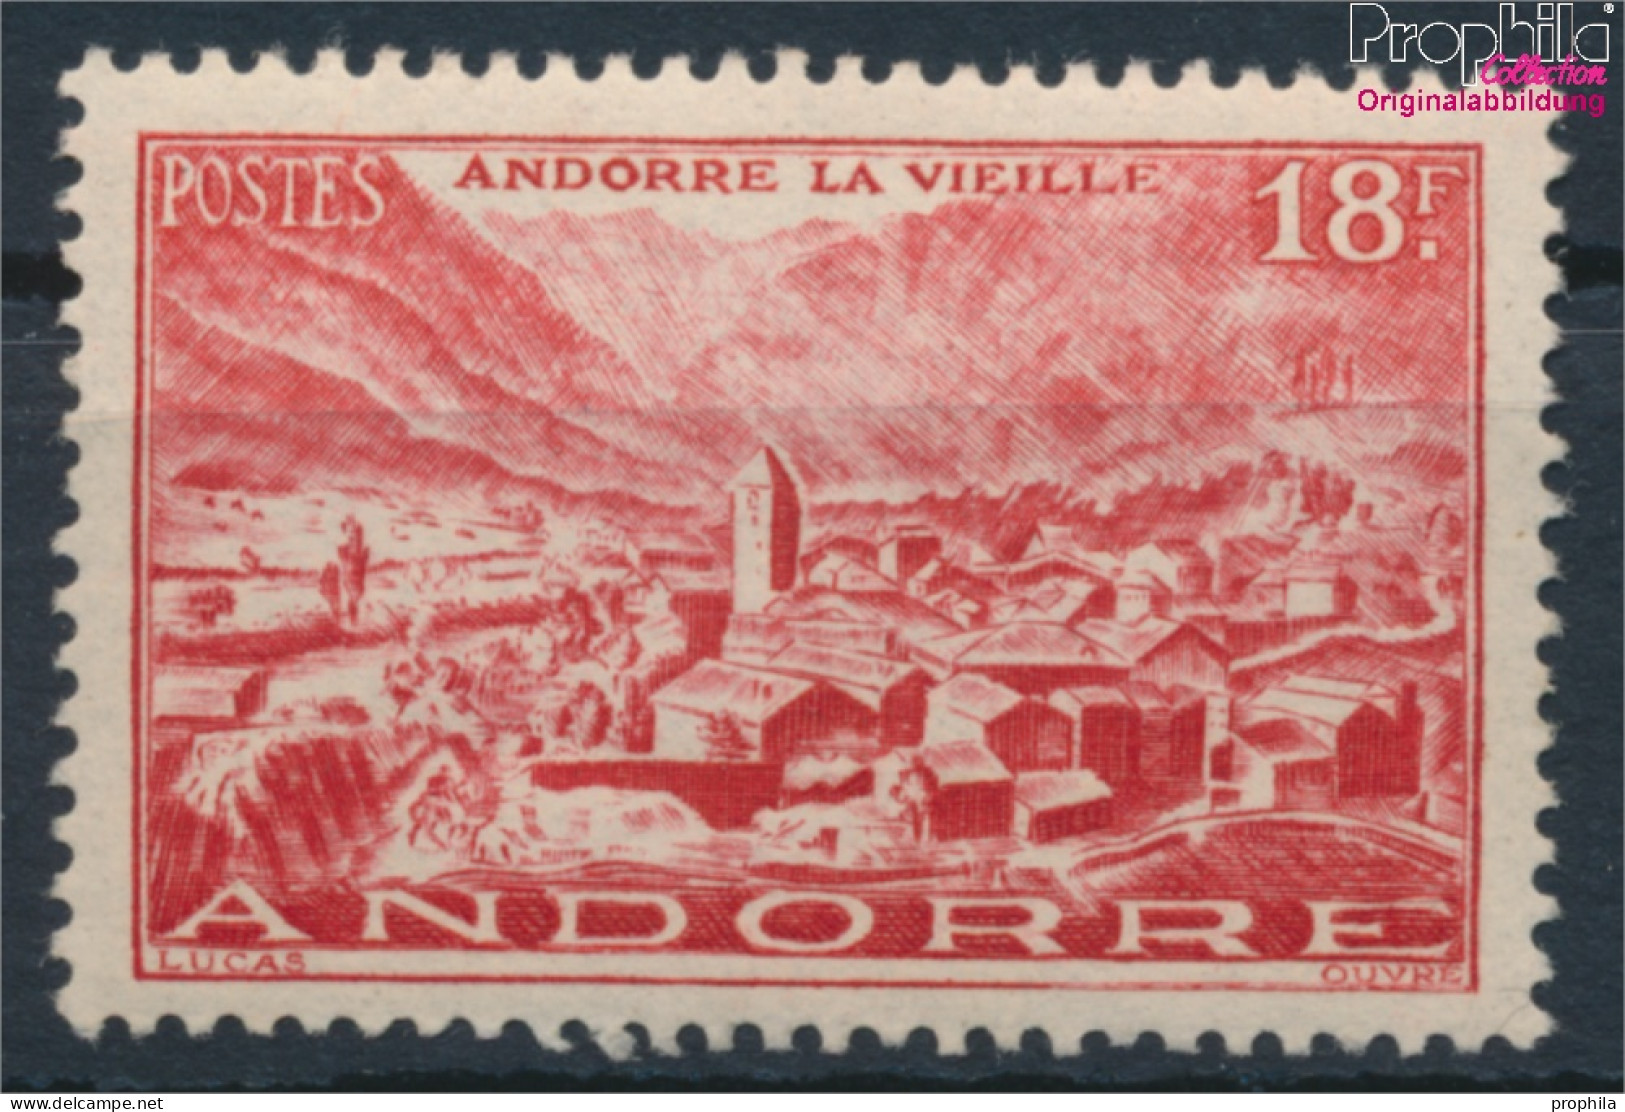 Andorra - Französische Post 133 Postfrisch 1944 Landschaften (10368400 - Nuovi